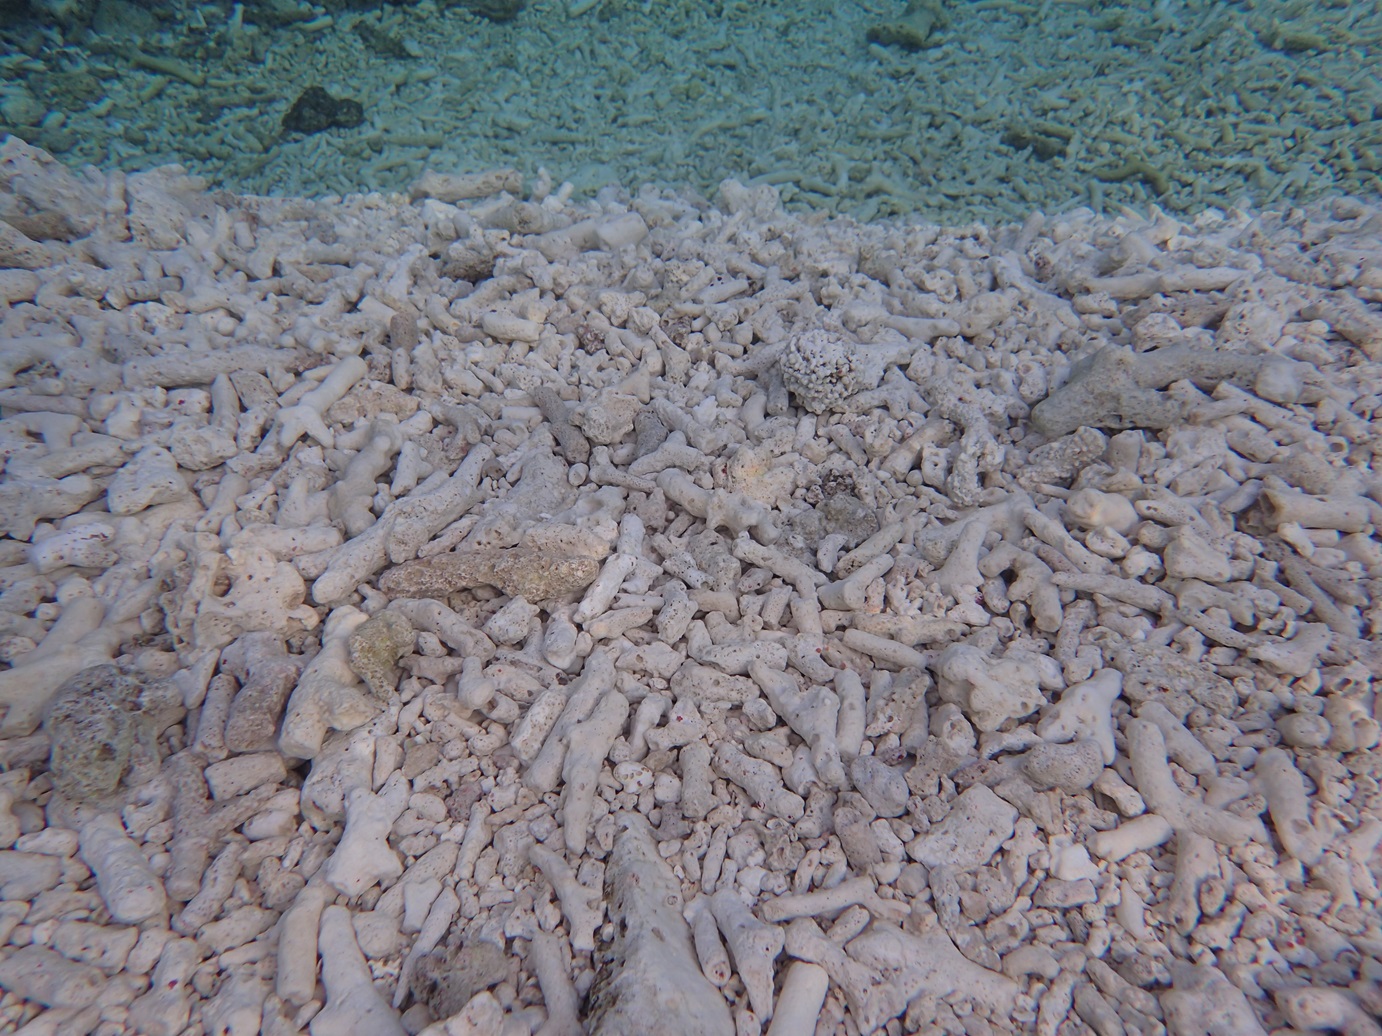 バラス島は、人の指ほどの大きさのサンゴの骨格が積みあがってできている